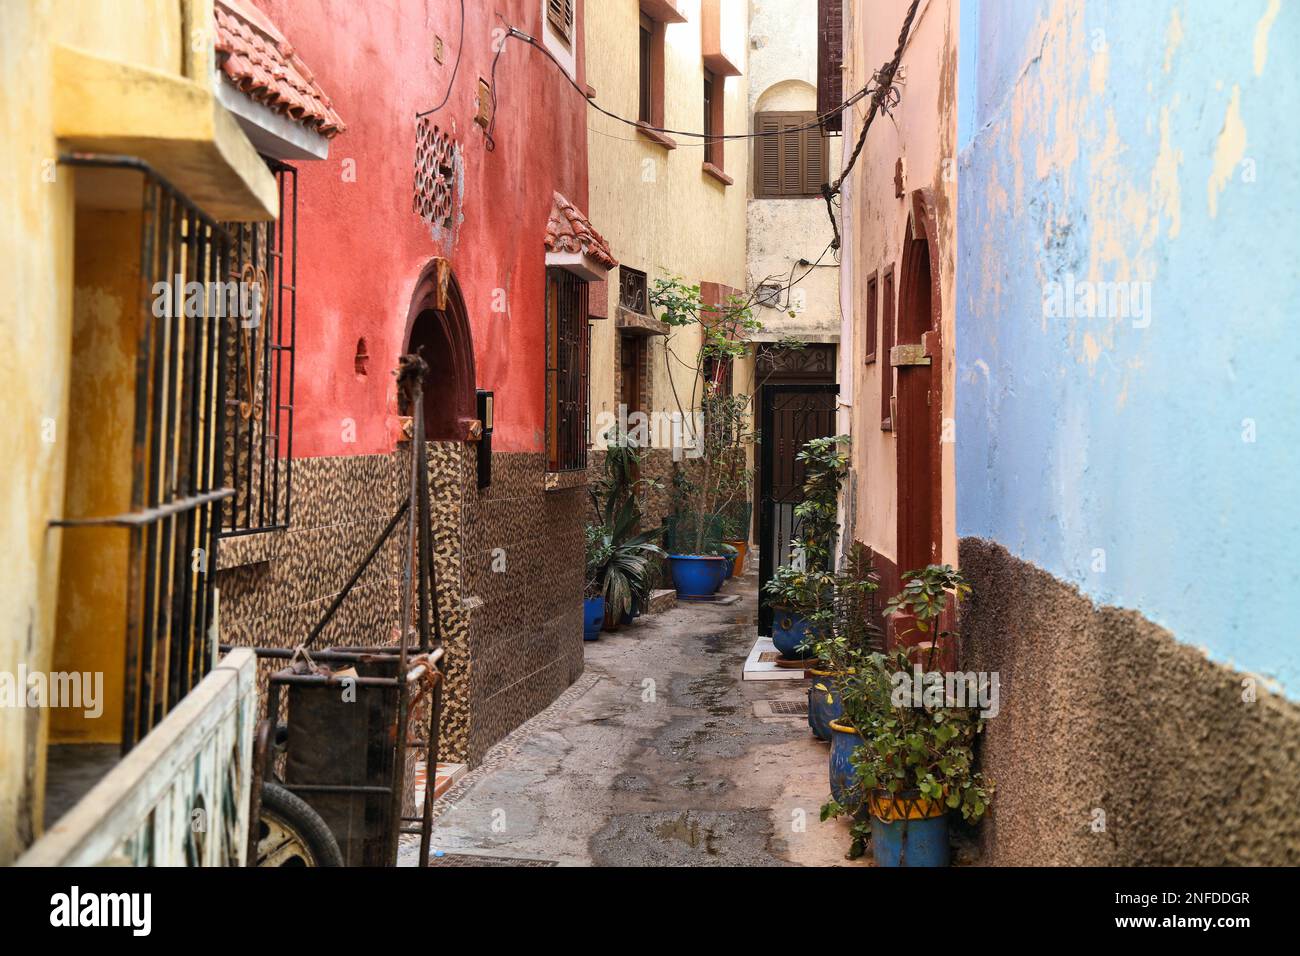 Rue de la ville d'El Jadida au Maroc. Monument marocain - ancienne colonie portugaise, classée au patrimoine mondial de l'UNESCO. Banque D'Images